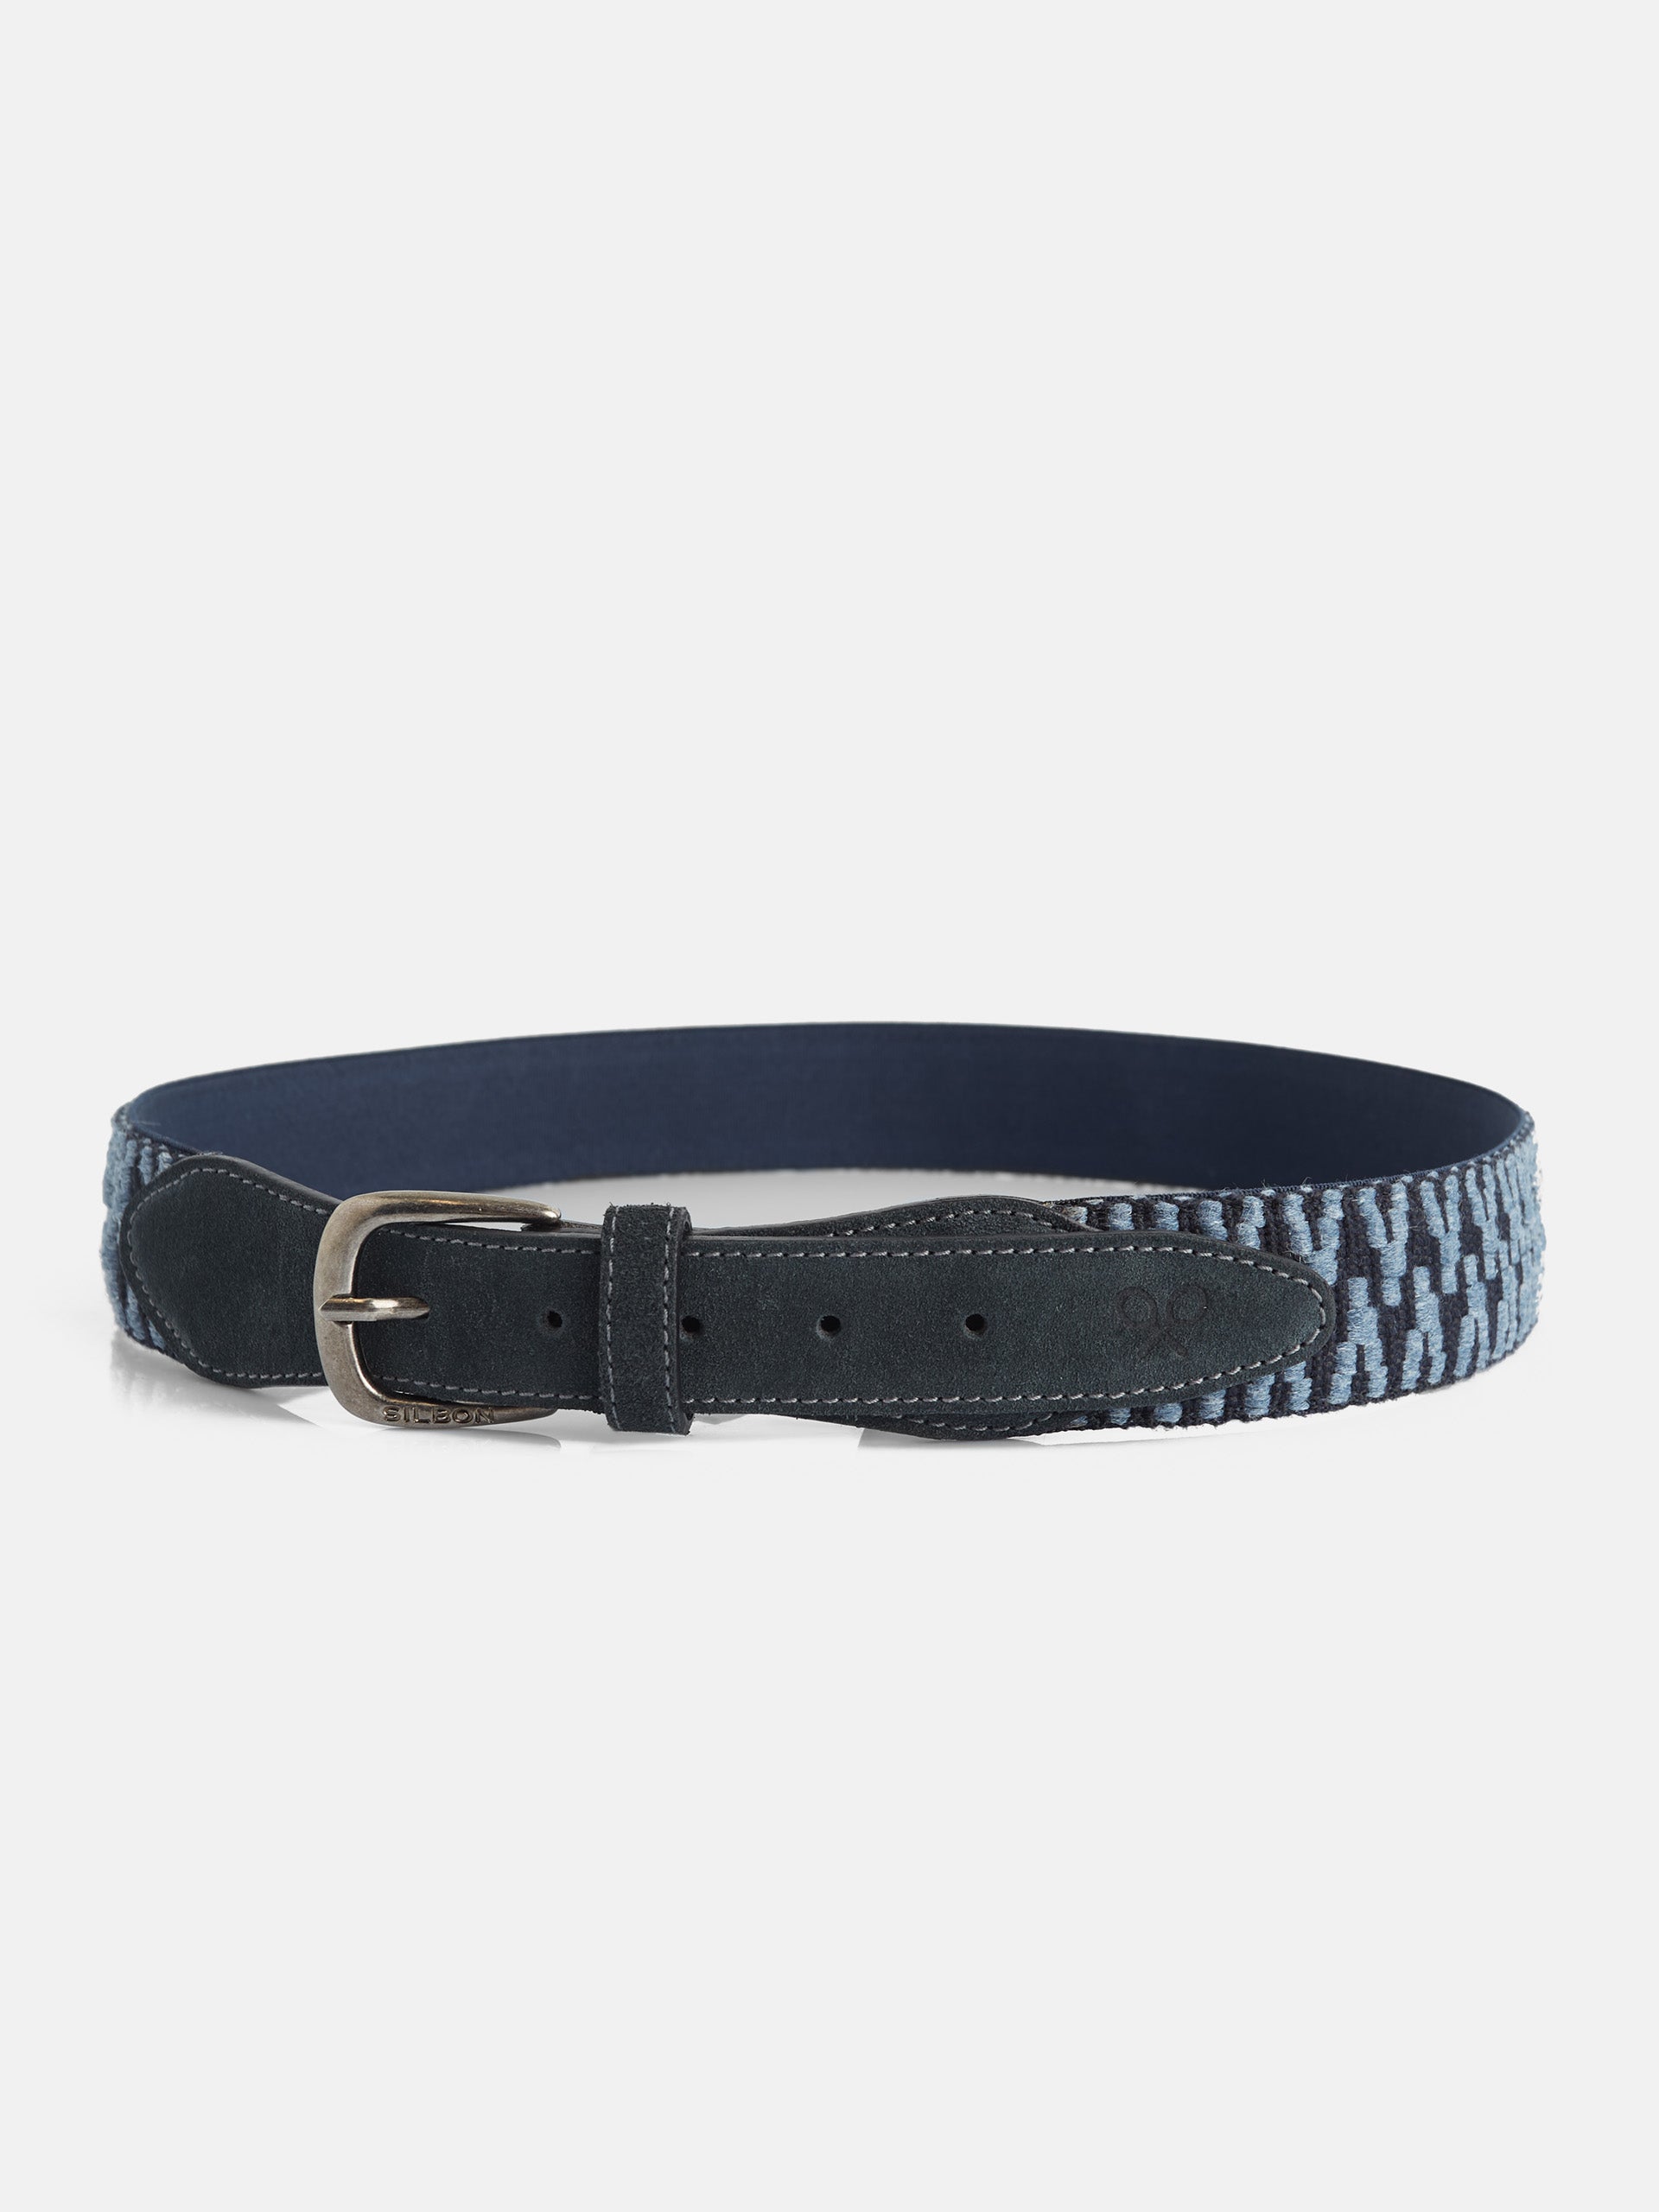 Cinturon silbon piel bordado azul